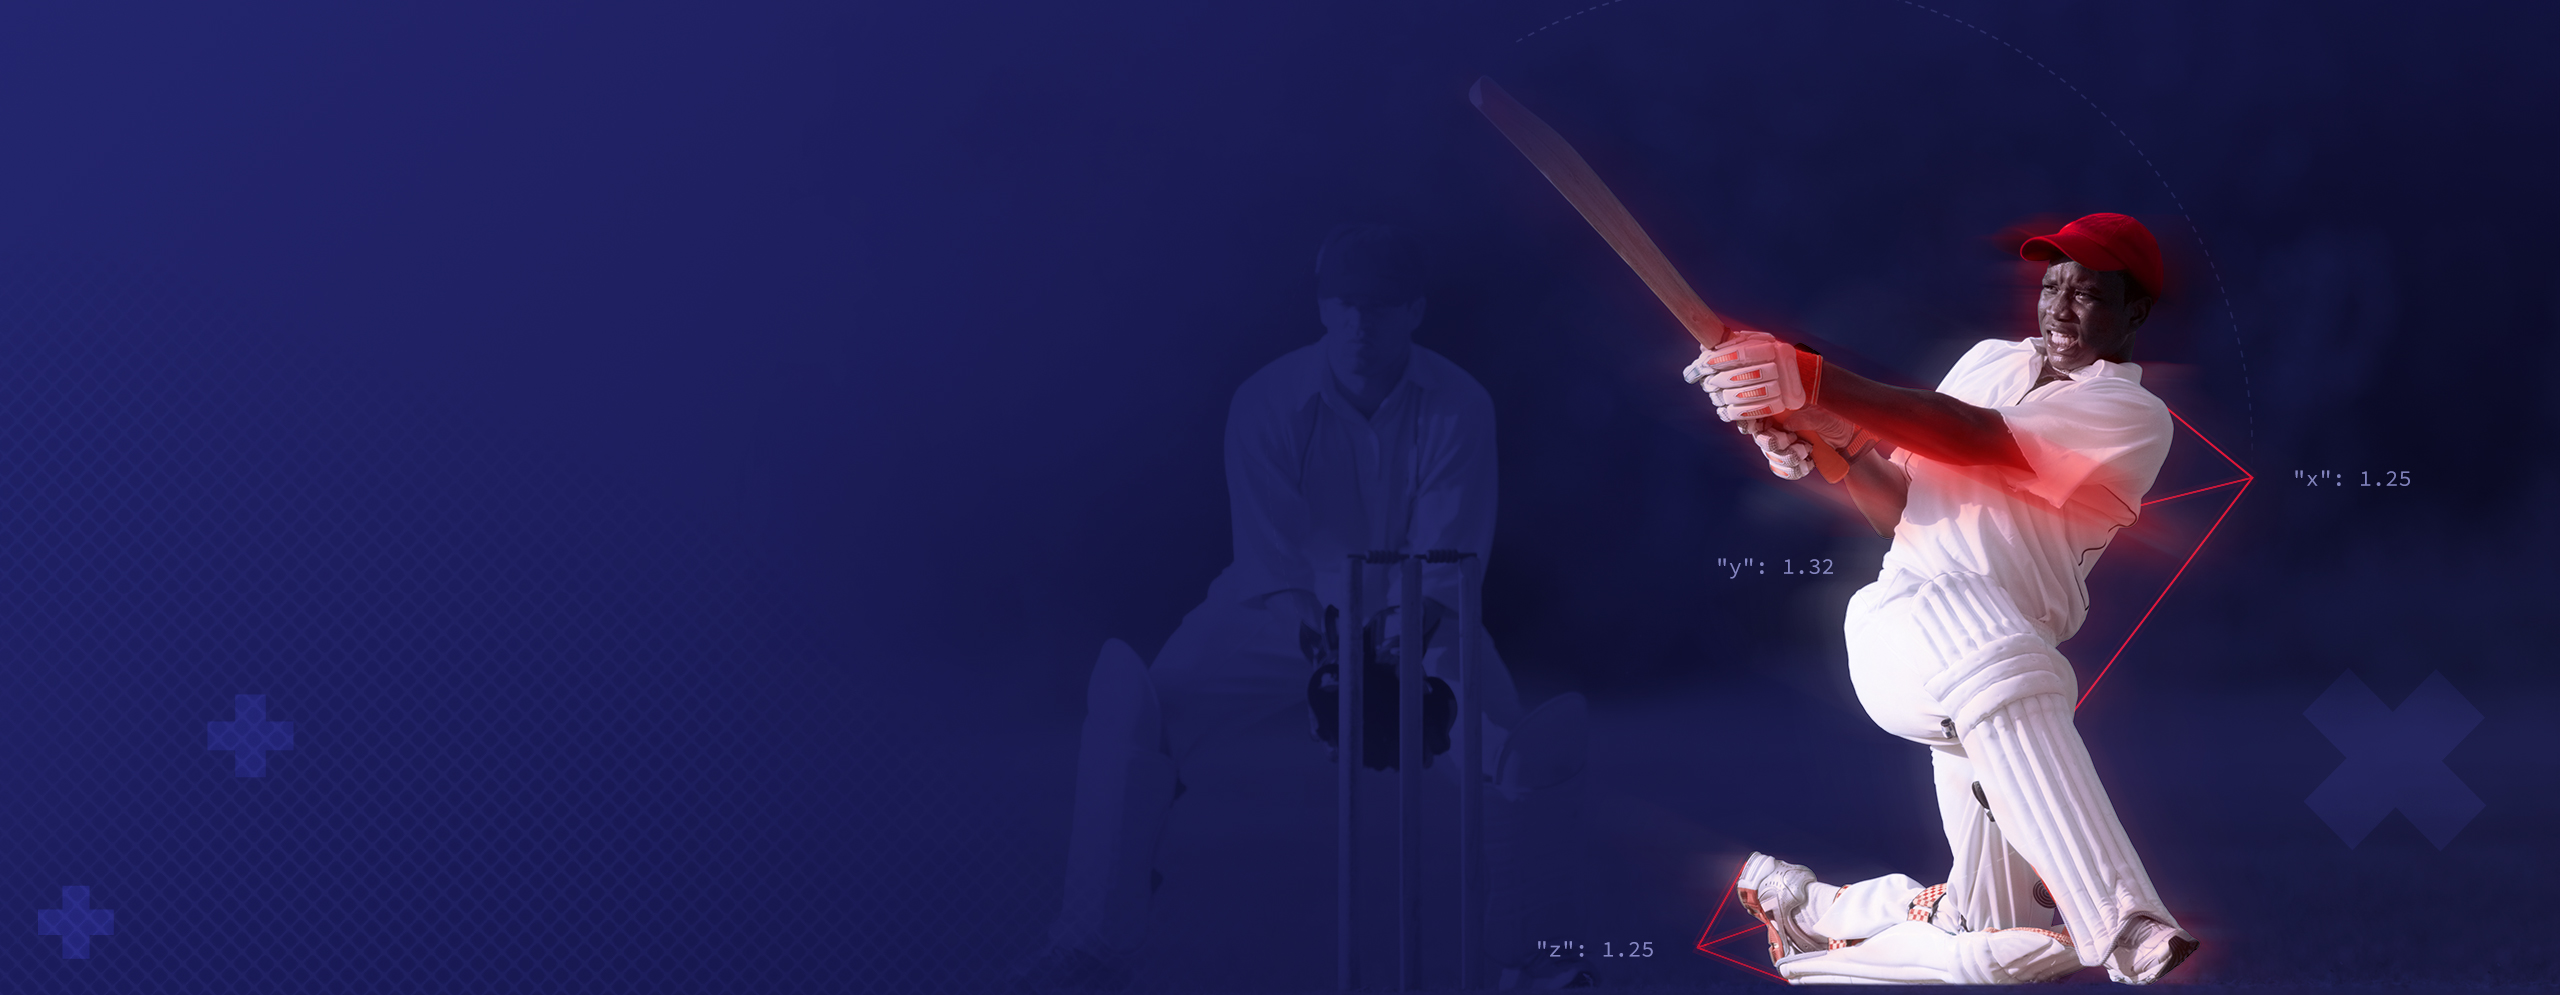 InteractSport Decorative cricket header